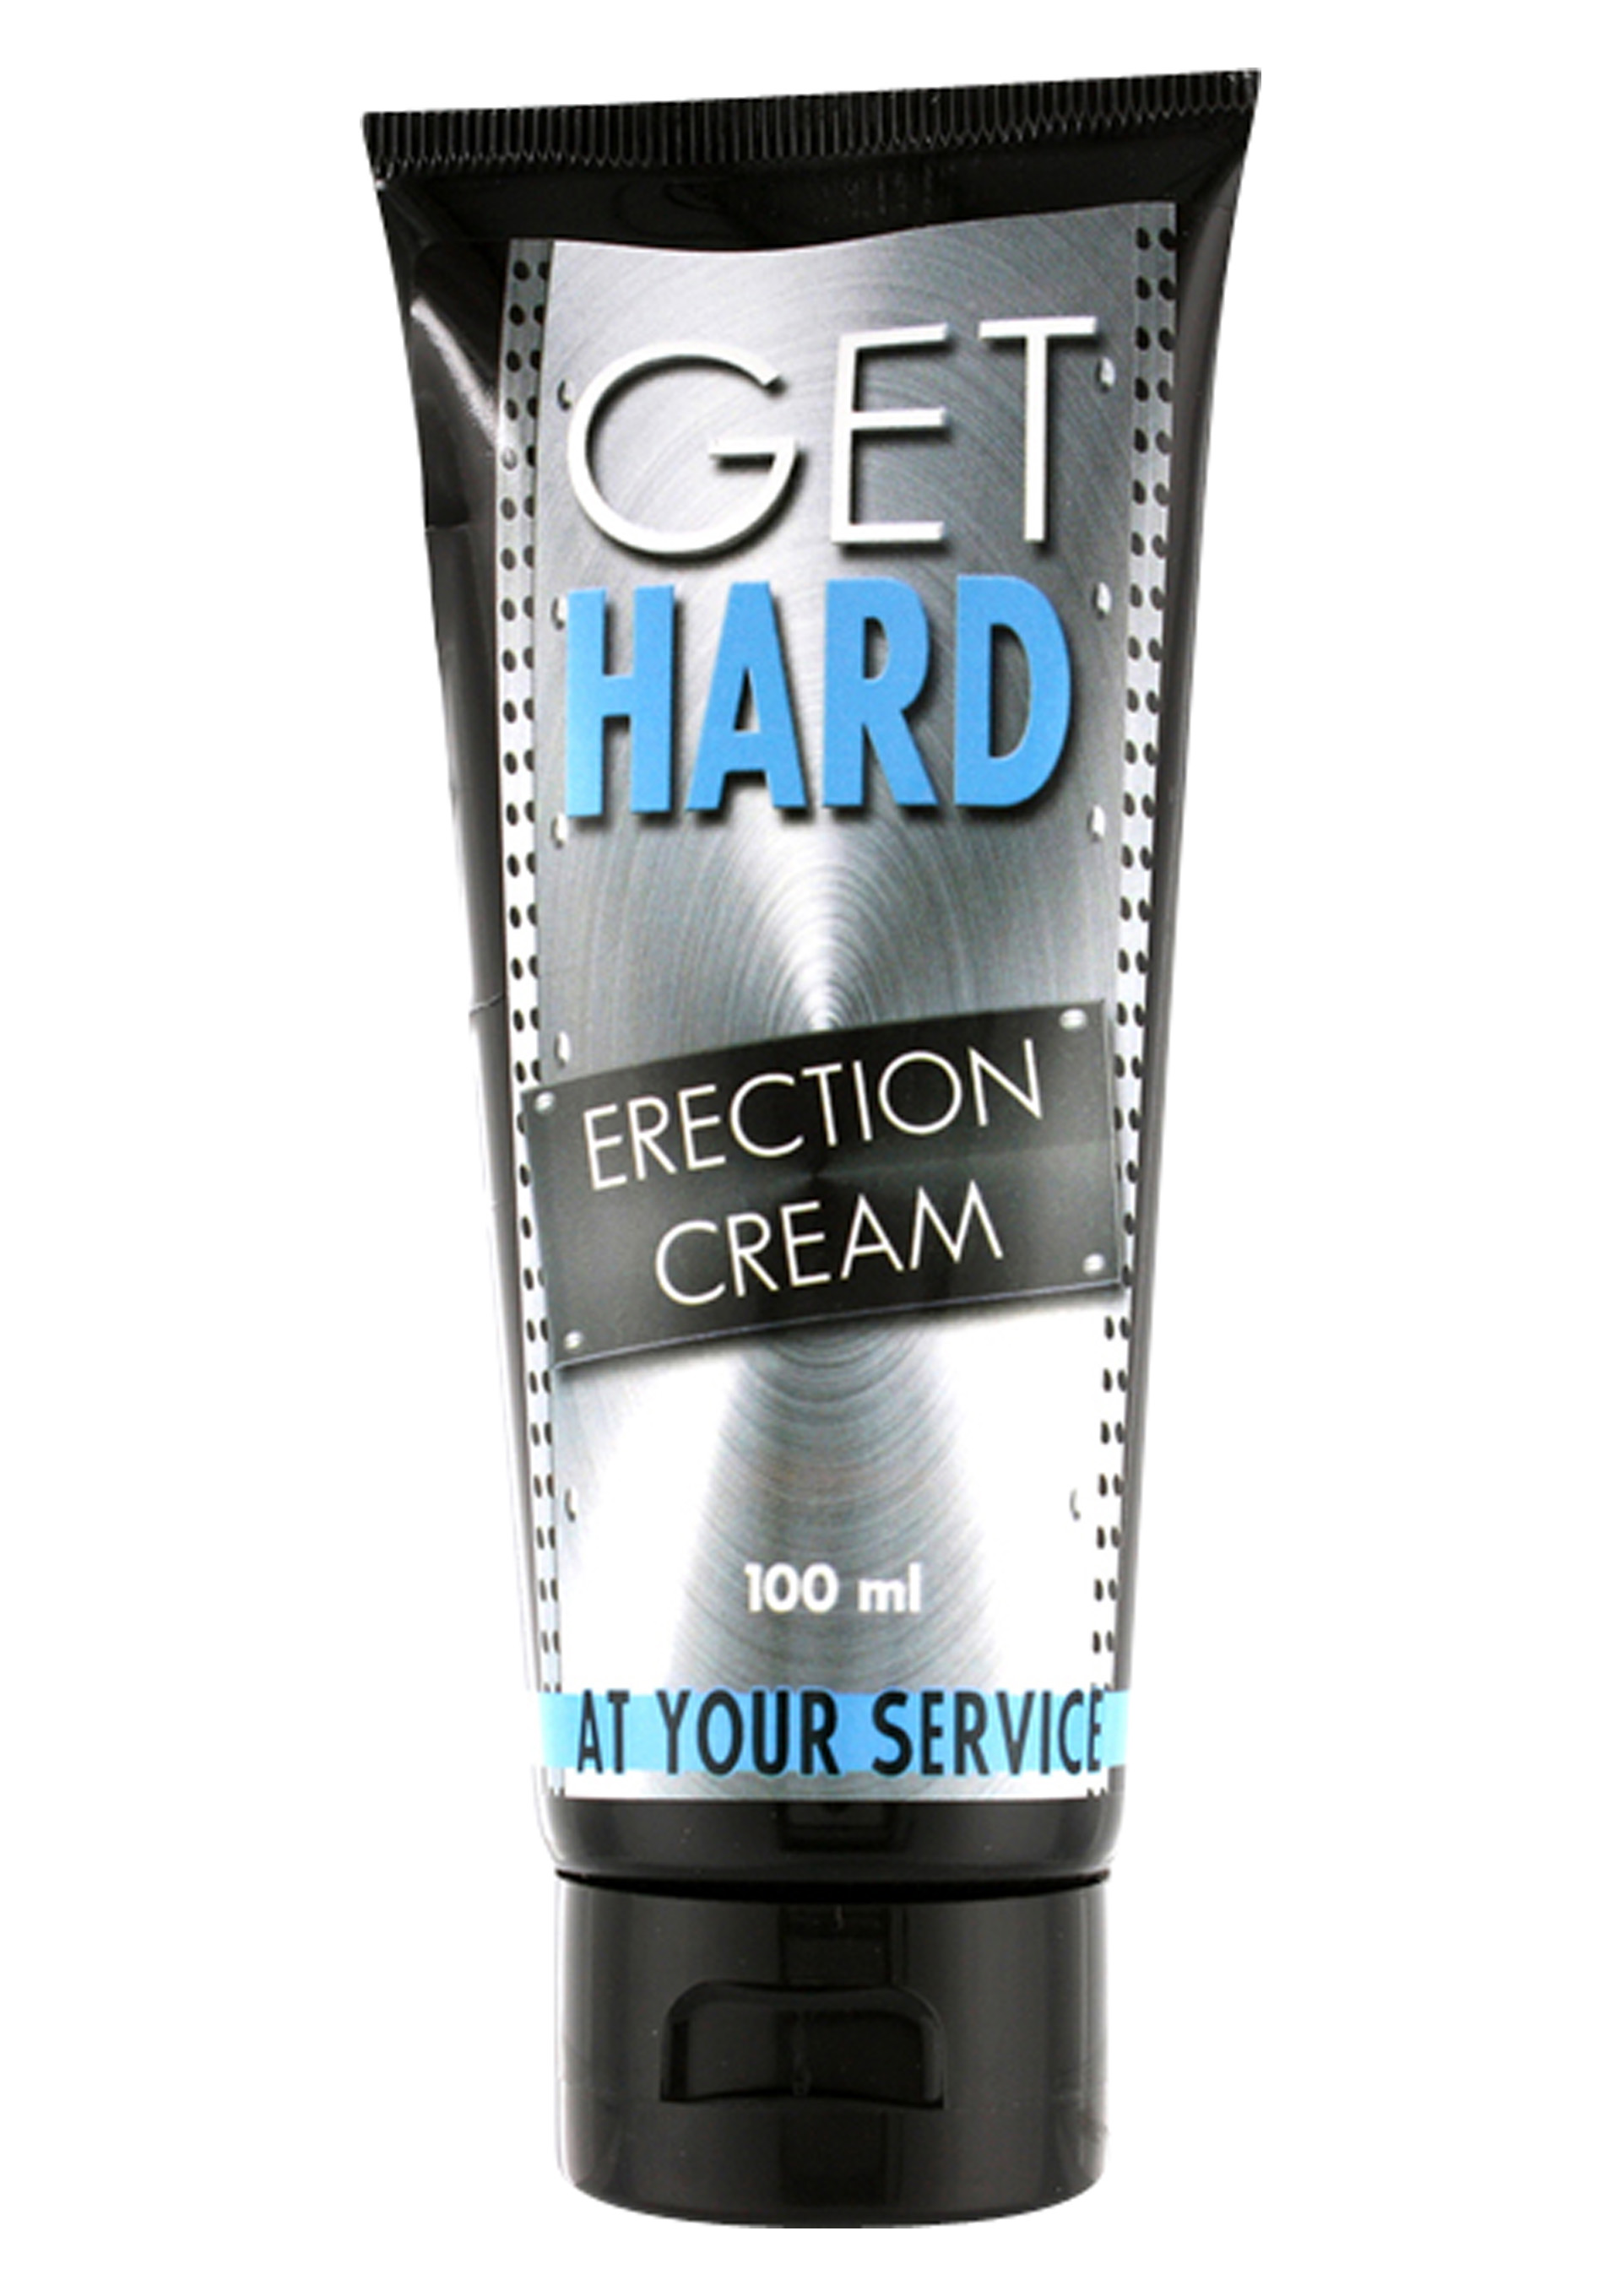 Get Hard Erection Cream 100ml.